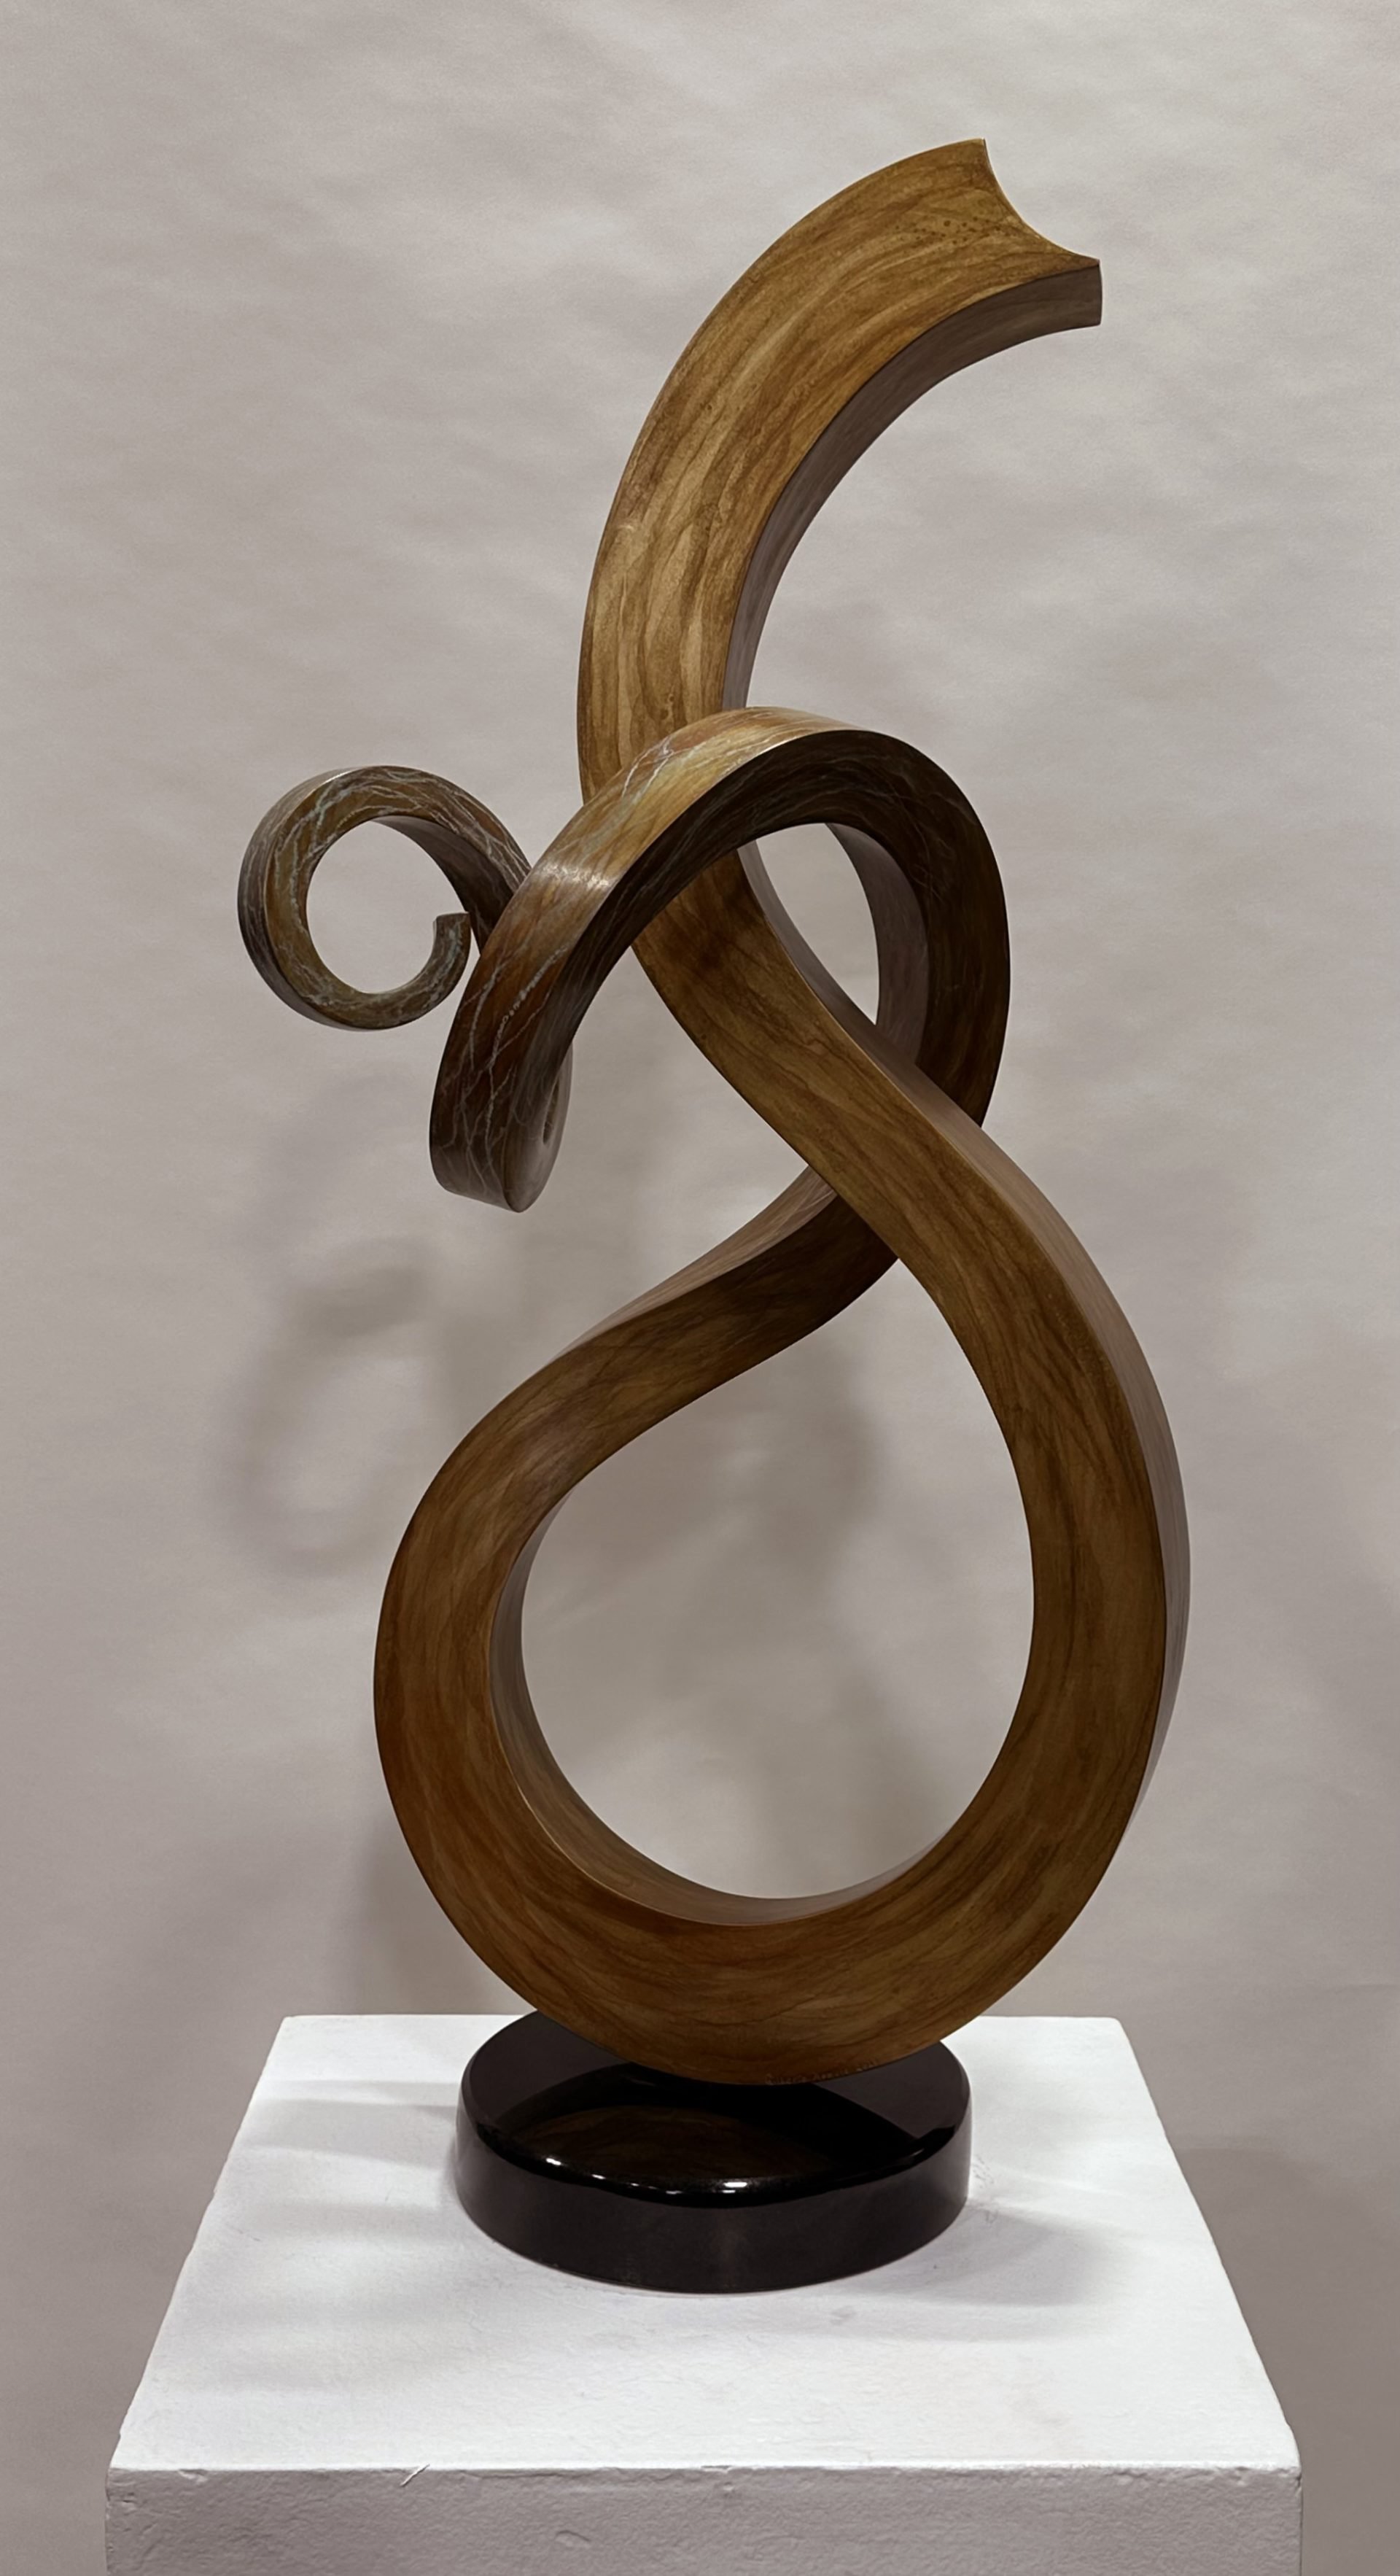 verticle swirl sculpture